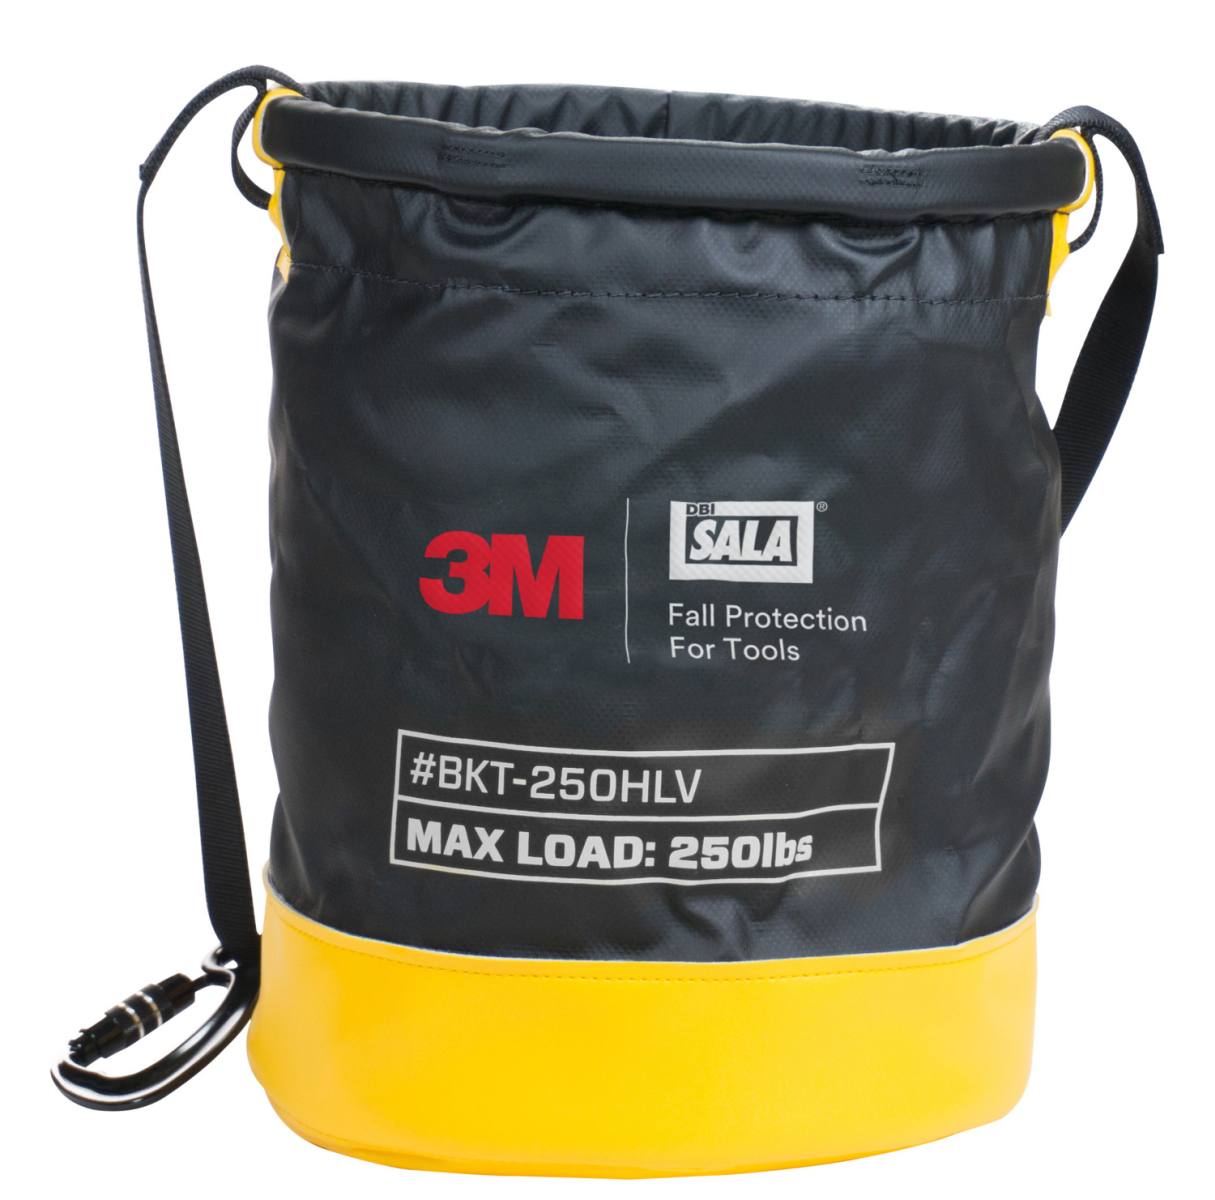 3M DBI-SALA sac de transport SAFETY BUCKET, taille : 38 x 32 cm, vinyle imperméable, système de fermeture à crochets et œillets, sangle de transport, divers œillets métalliques, charge max. 113,4 kg, H38 x D32 cm